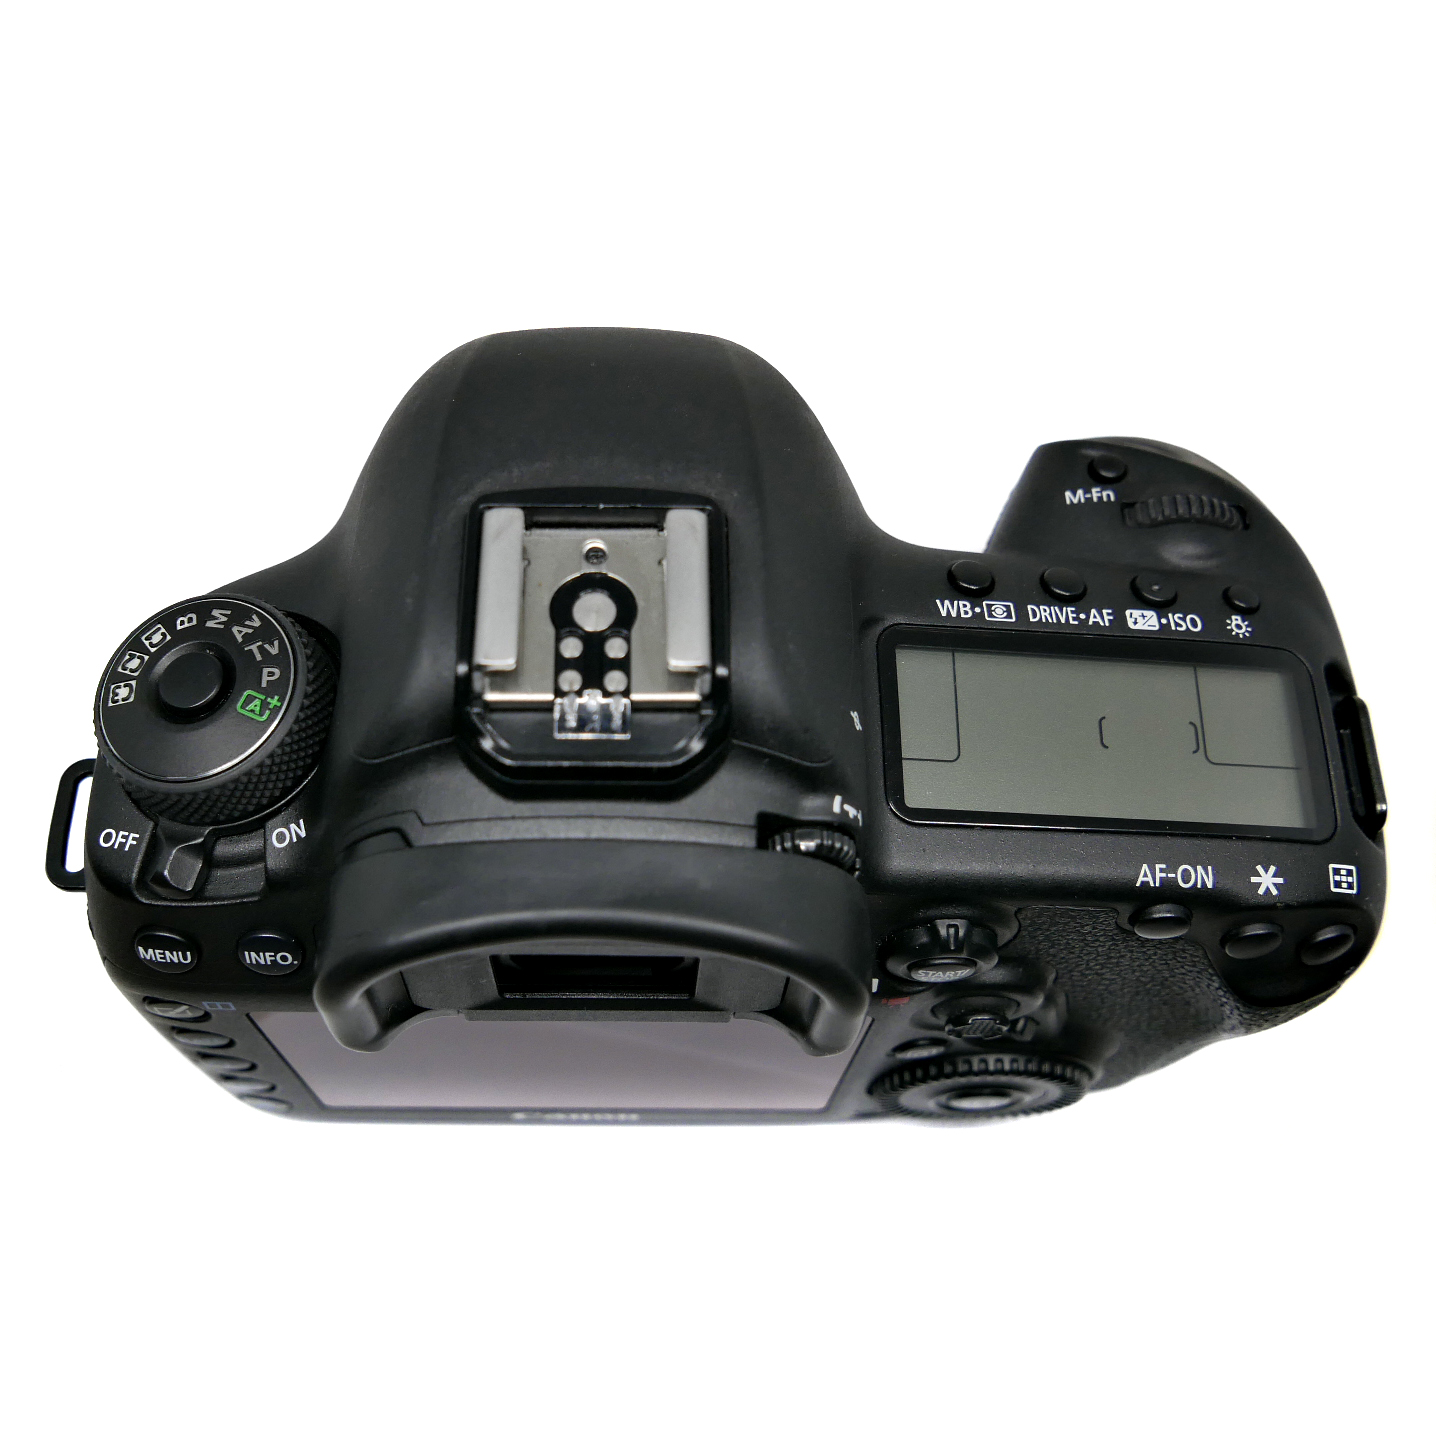 (Myyty) Canon EOS 5D Mark IV (SC:35375) (sis. ALV) (käytetty)